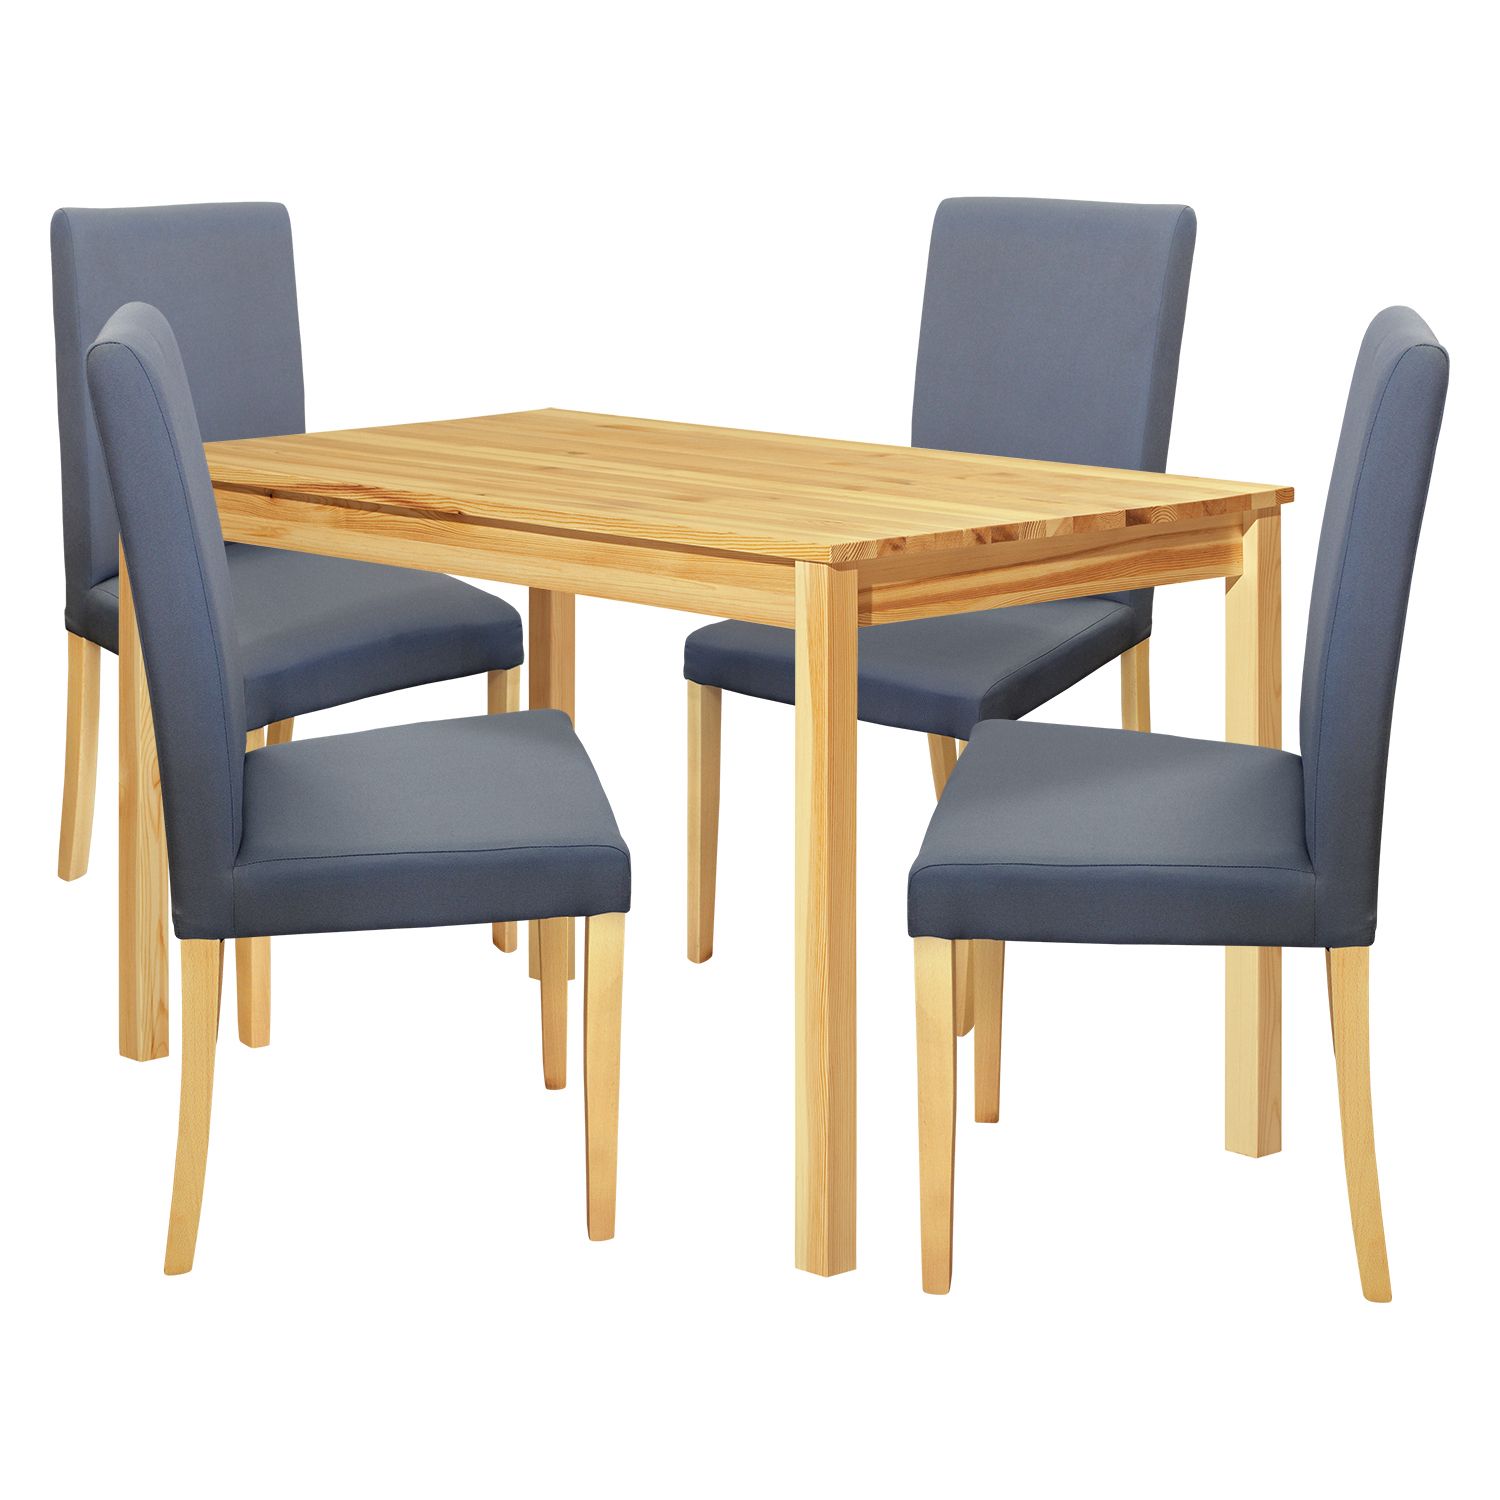 Idea Jídelní stůl 8848 lak + 4 židle PRIMA 3038 šedá/světlé nohy - IDEA nábytek